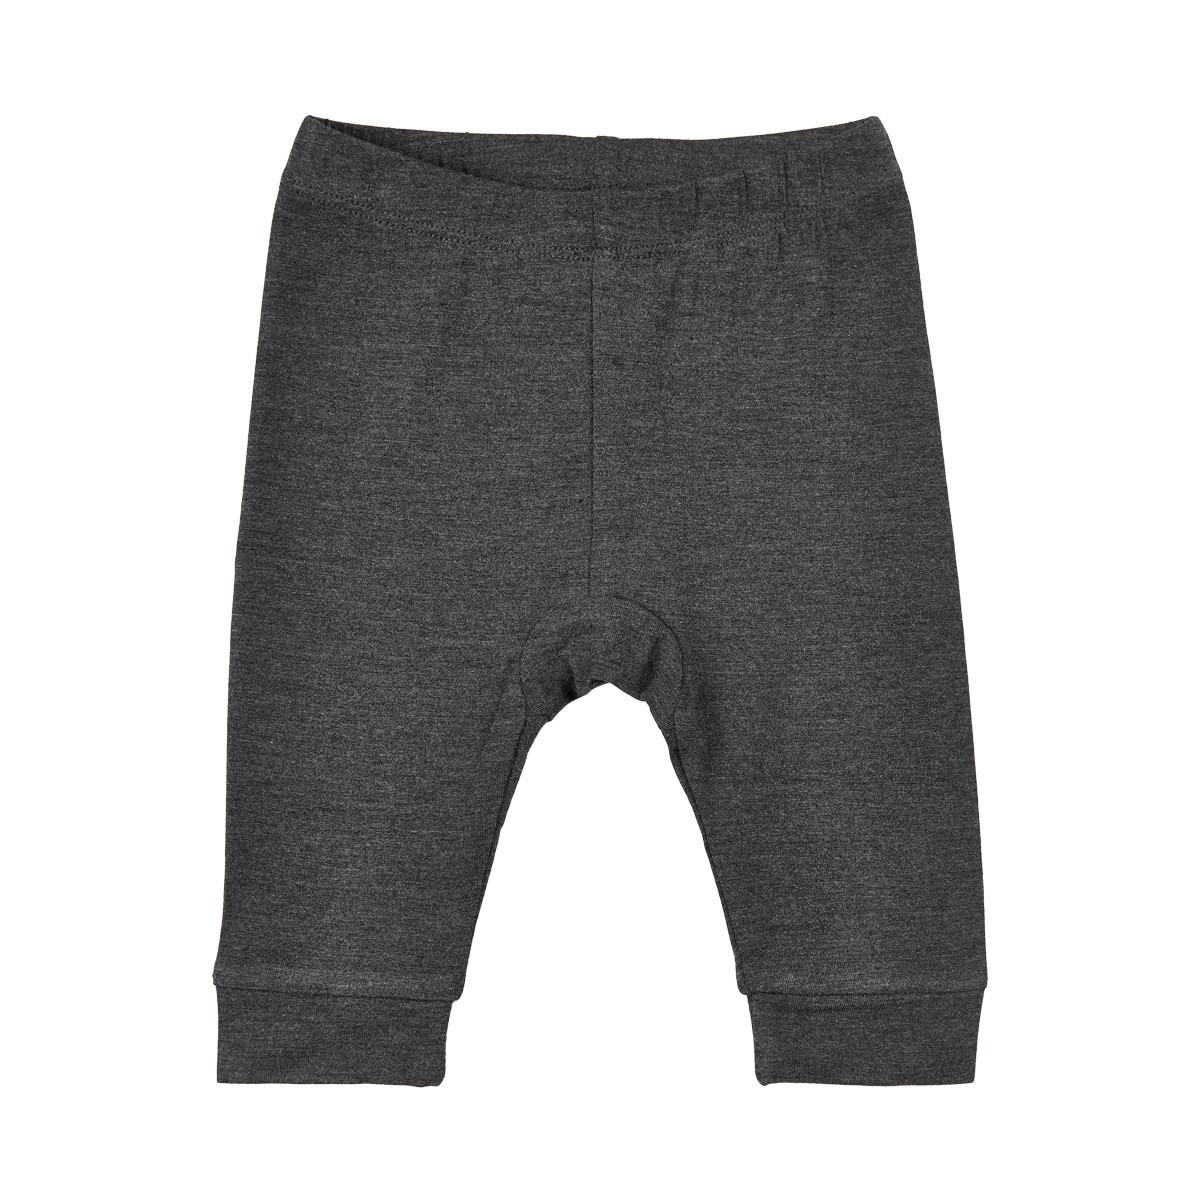 Bambuskangast püksid, Dark Grey Lasteriided - HellyK - Kvaliteetsed lasteriided, villariided, barefoot jalatsid